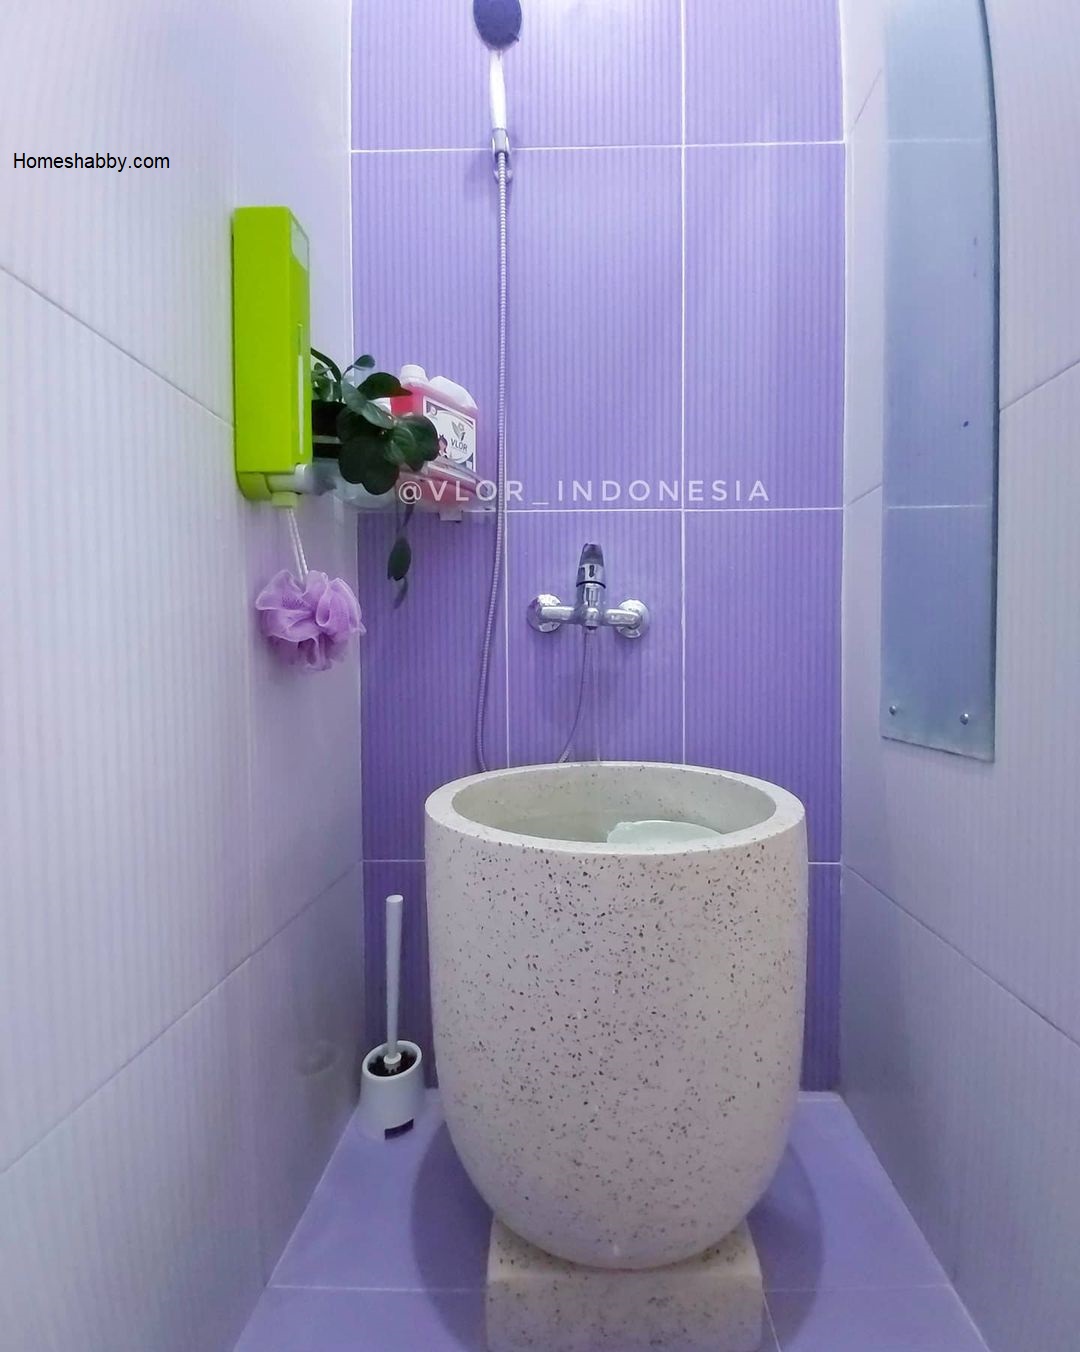 Inspirasi Terbaru Kamar Mandi Sederhana Dengan Perpaduan Keramik Yang Cantik Homeshabby Com Design Home Plans Home Decorating And Interior Design